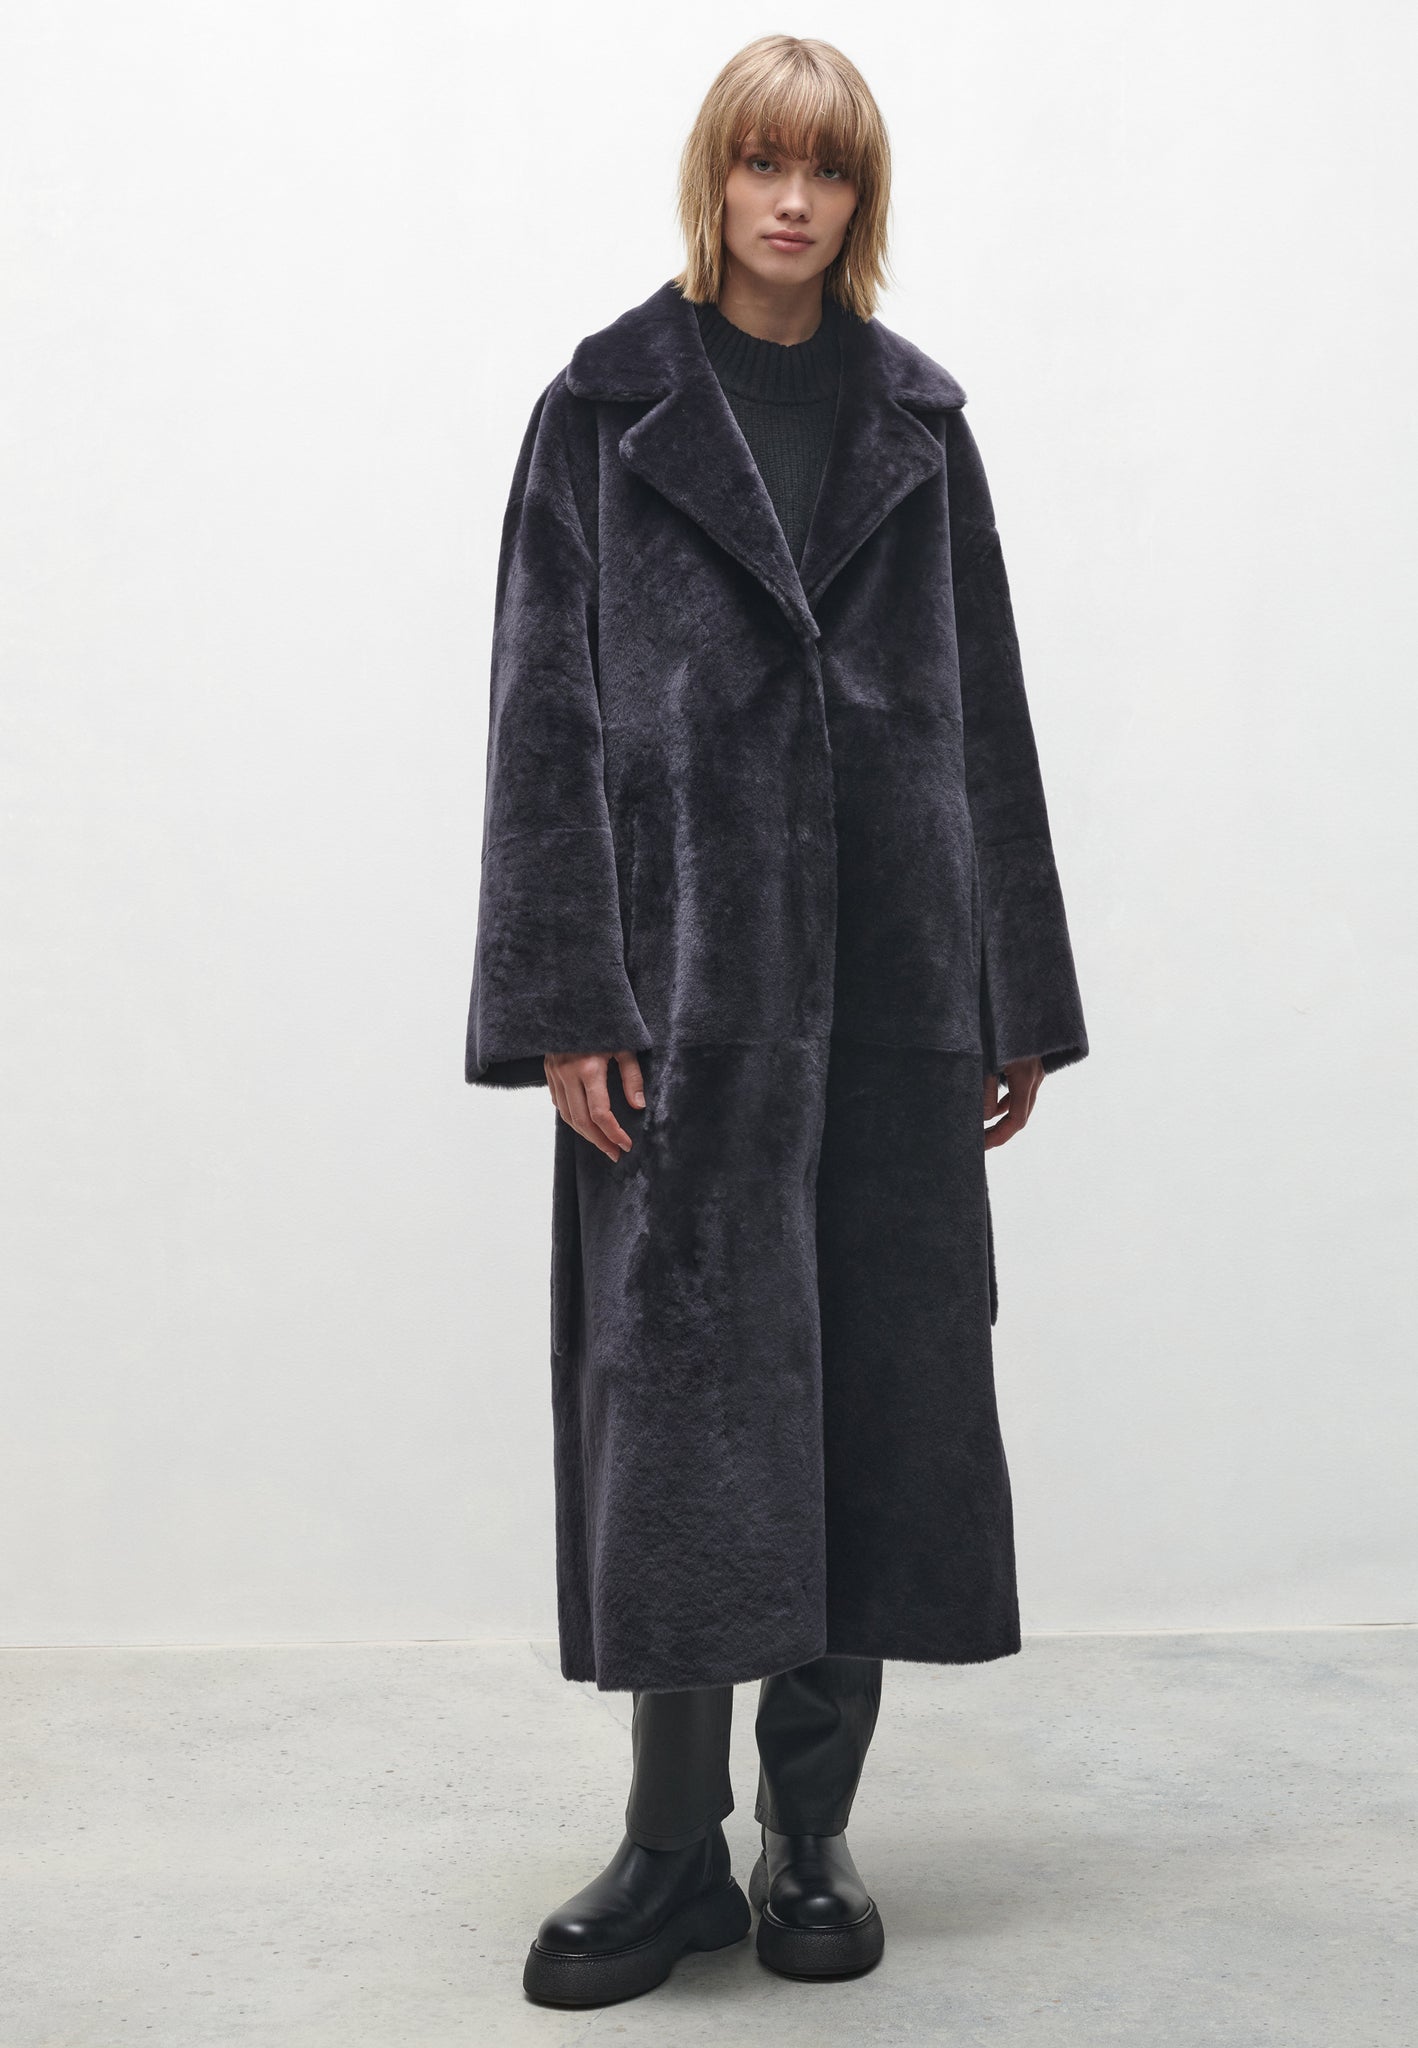 VIENNA | Long shearling coat